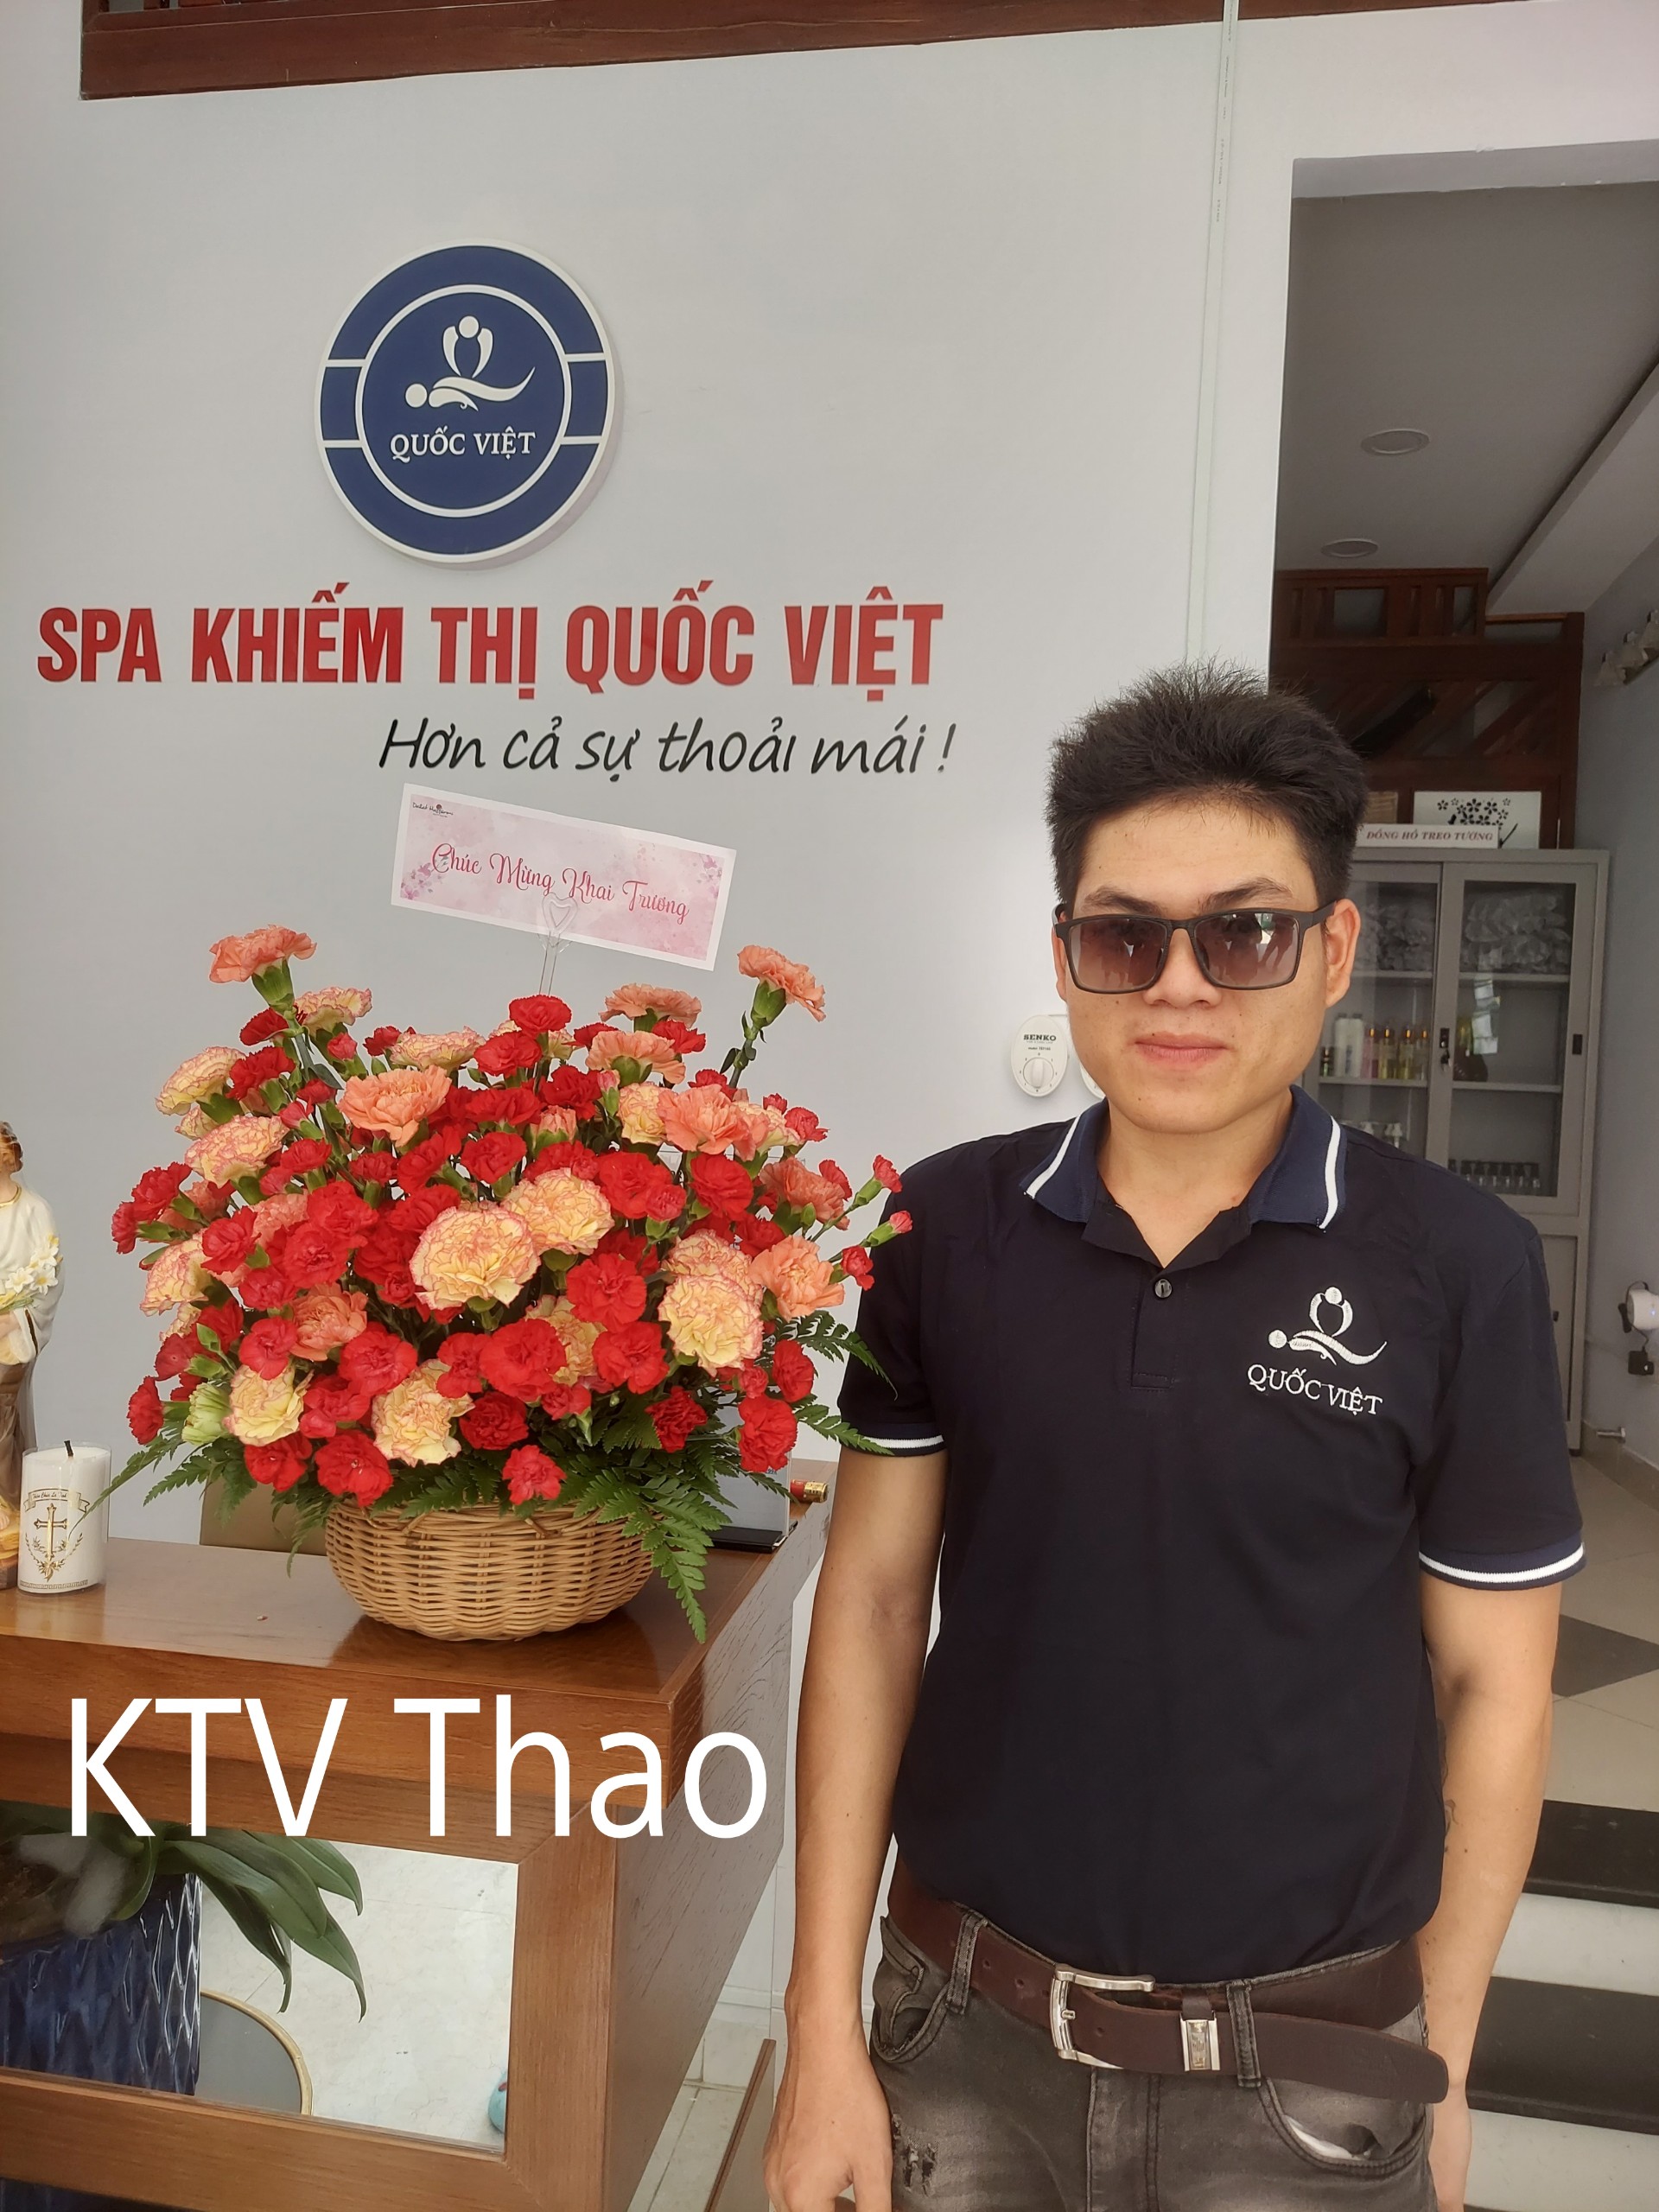 KTV Thao